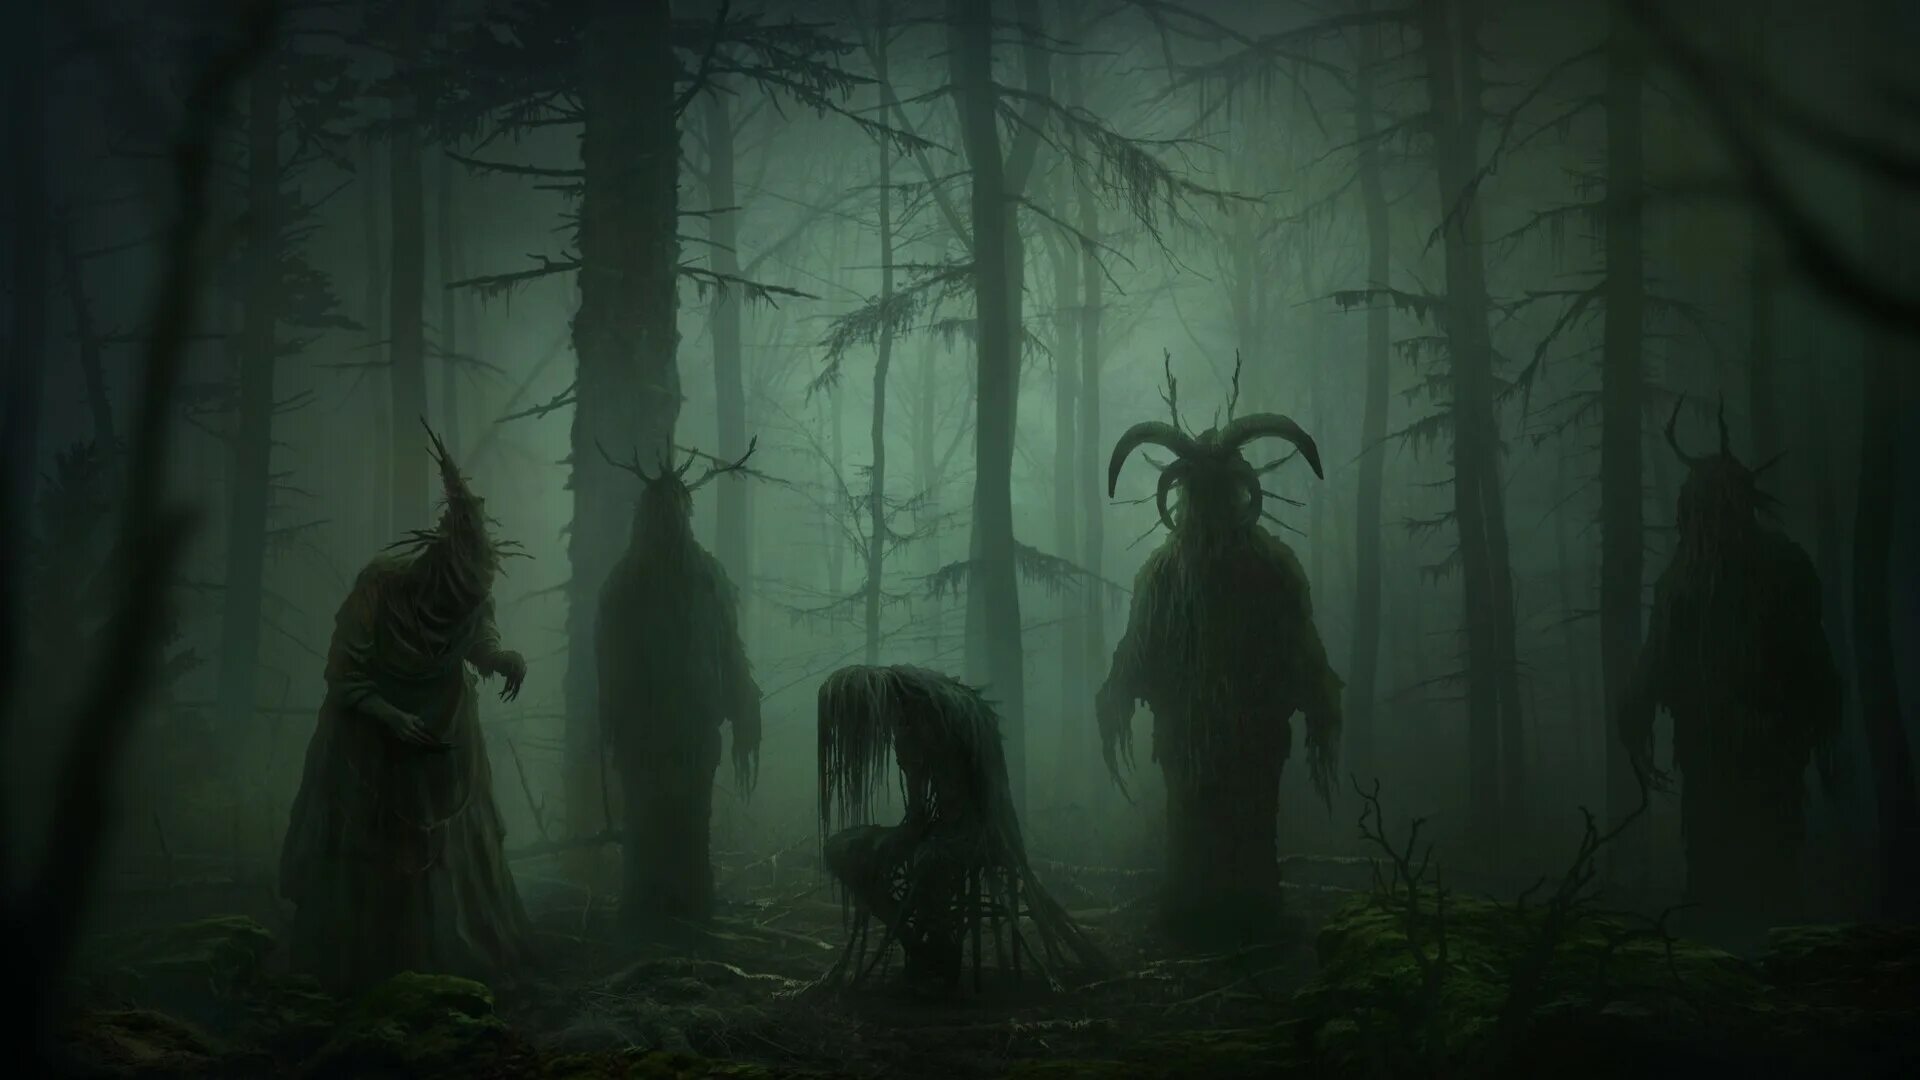 Dark хоррор. Темный лес the Woods 2005. Мрачное фэнтези. Лесные существа.